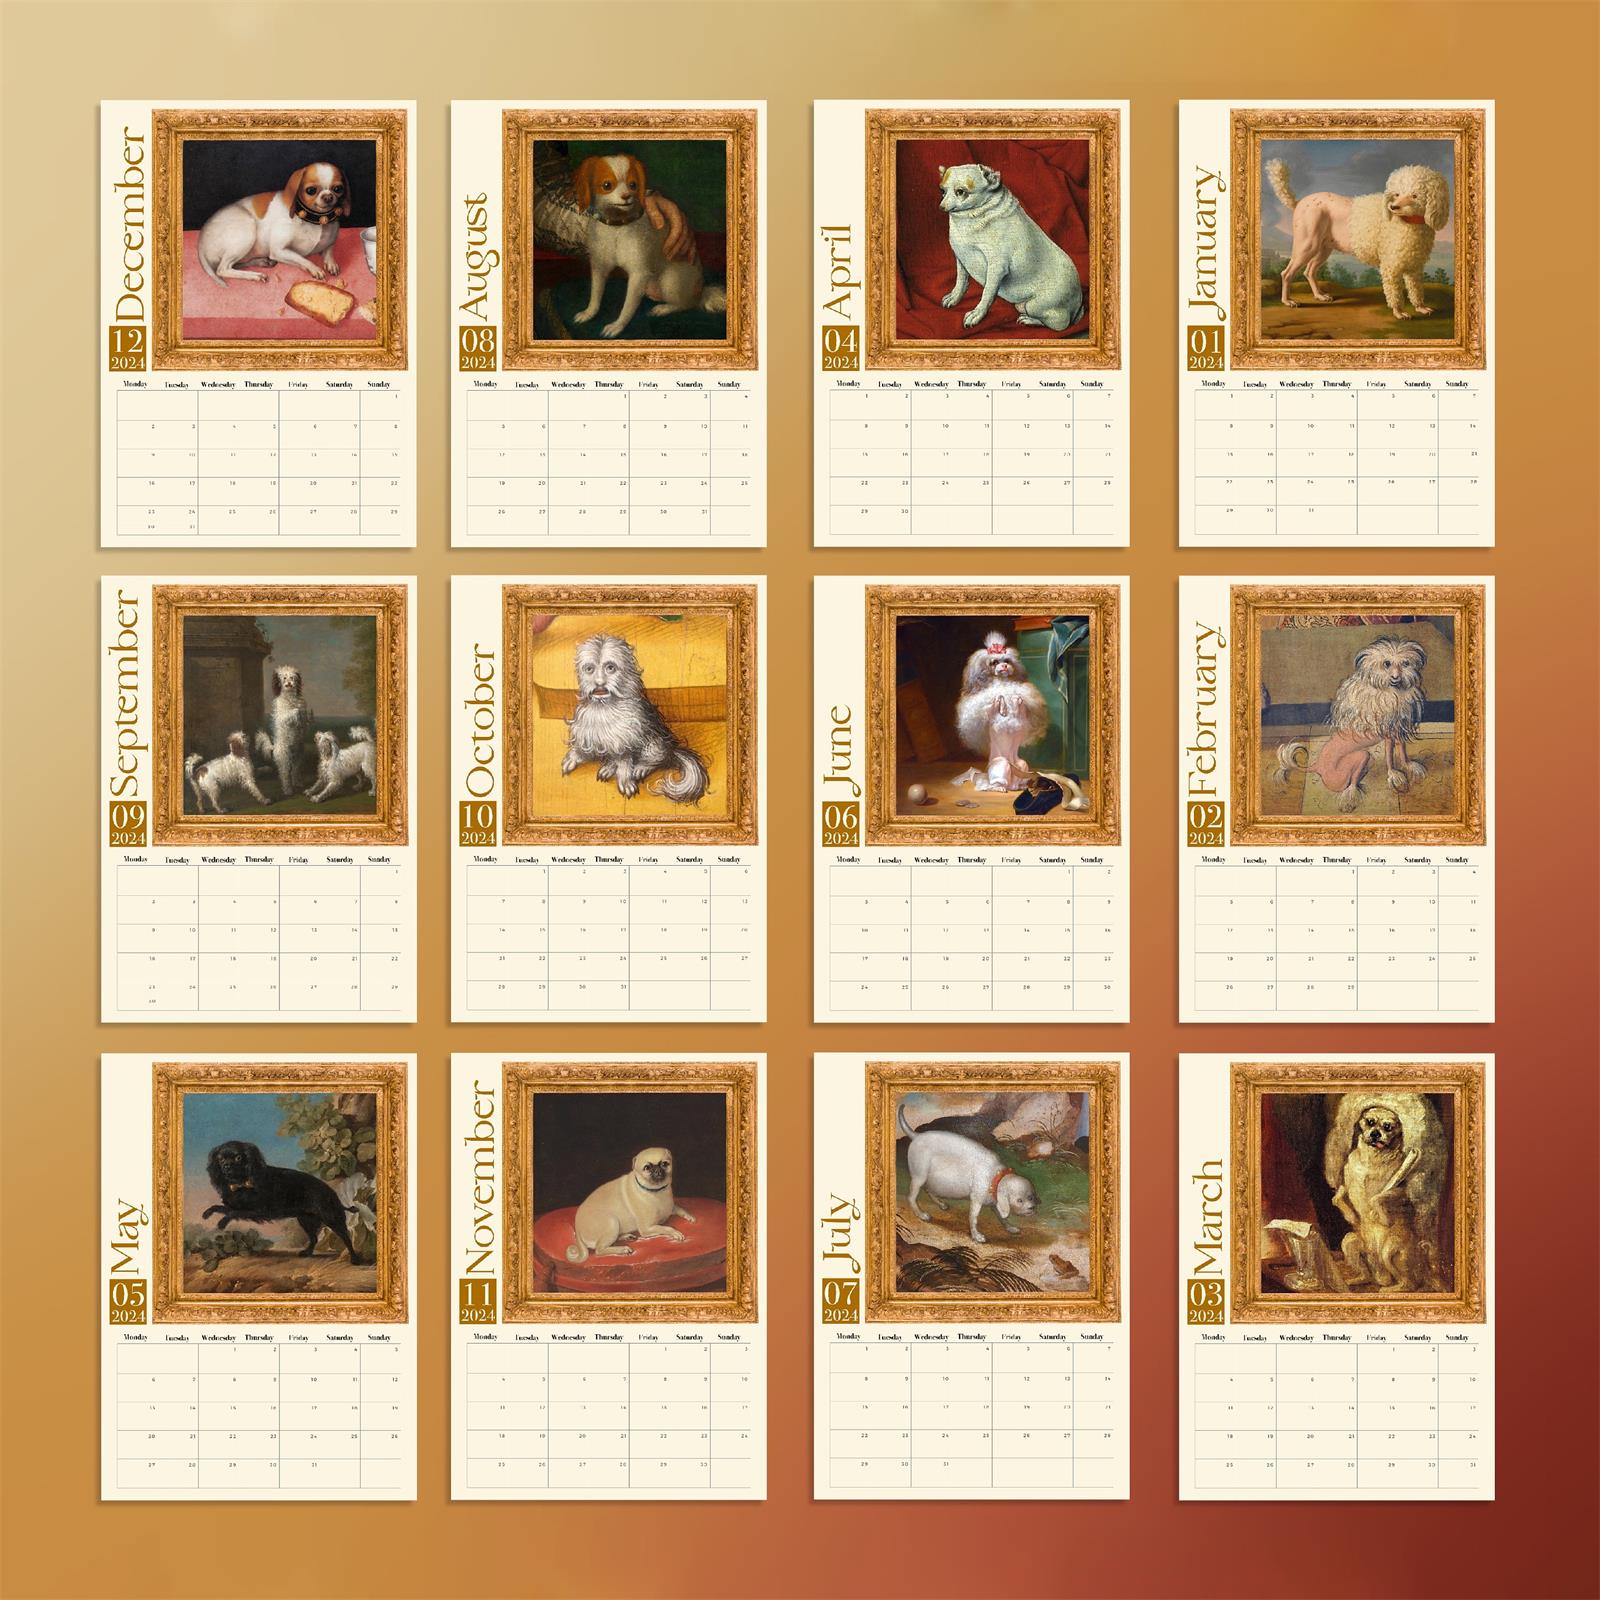 🐶Weird Medieval DogWeird Medieval Dog Calendar 2024 - Dog Advent Calendars - Dog Advent Calendar For Dogs - Dog Calendar Advent Calendar 2024📅